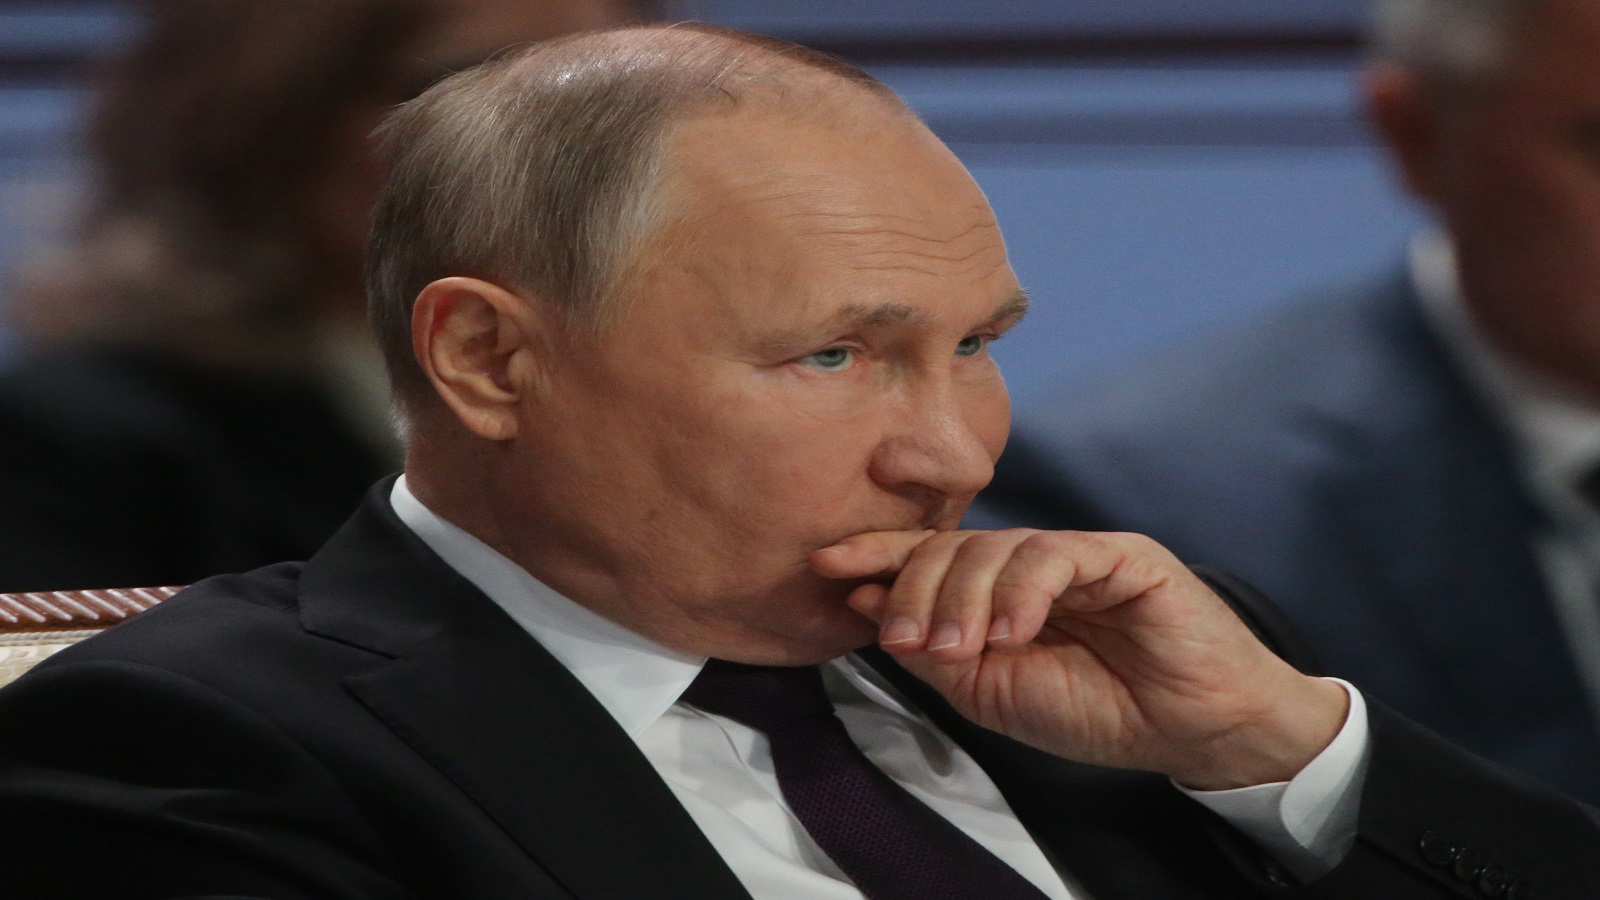 بوتين يشترط للتفاوض اعتراف الغرب بضمه للأقاليم الاوكرانية الأربعة